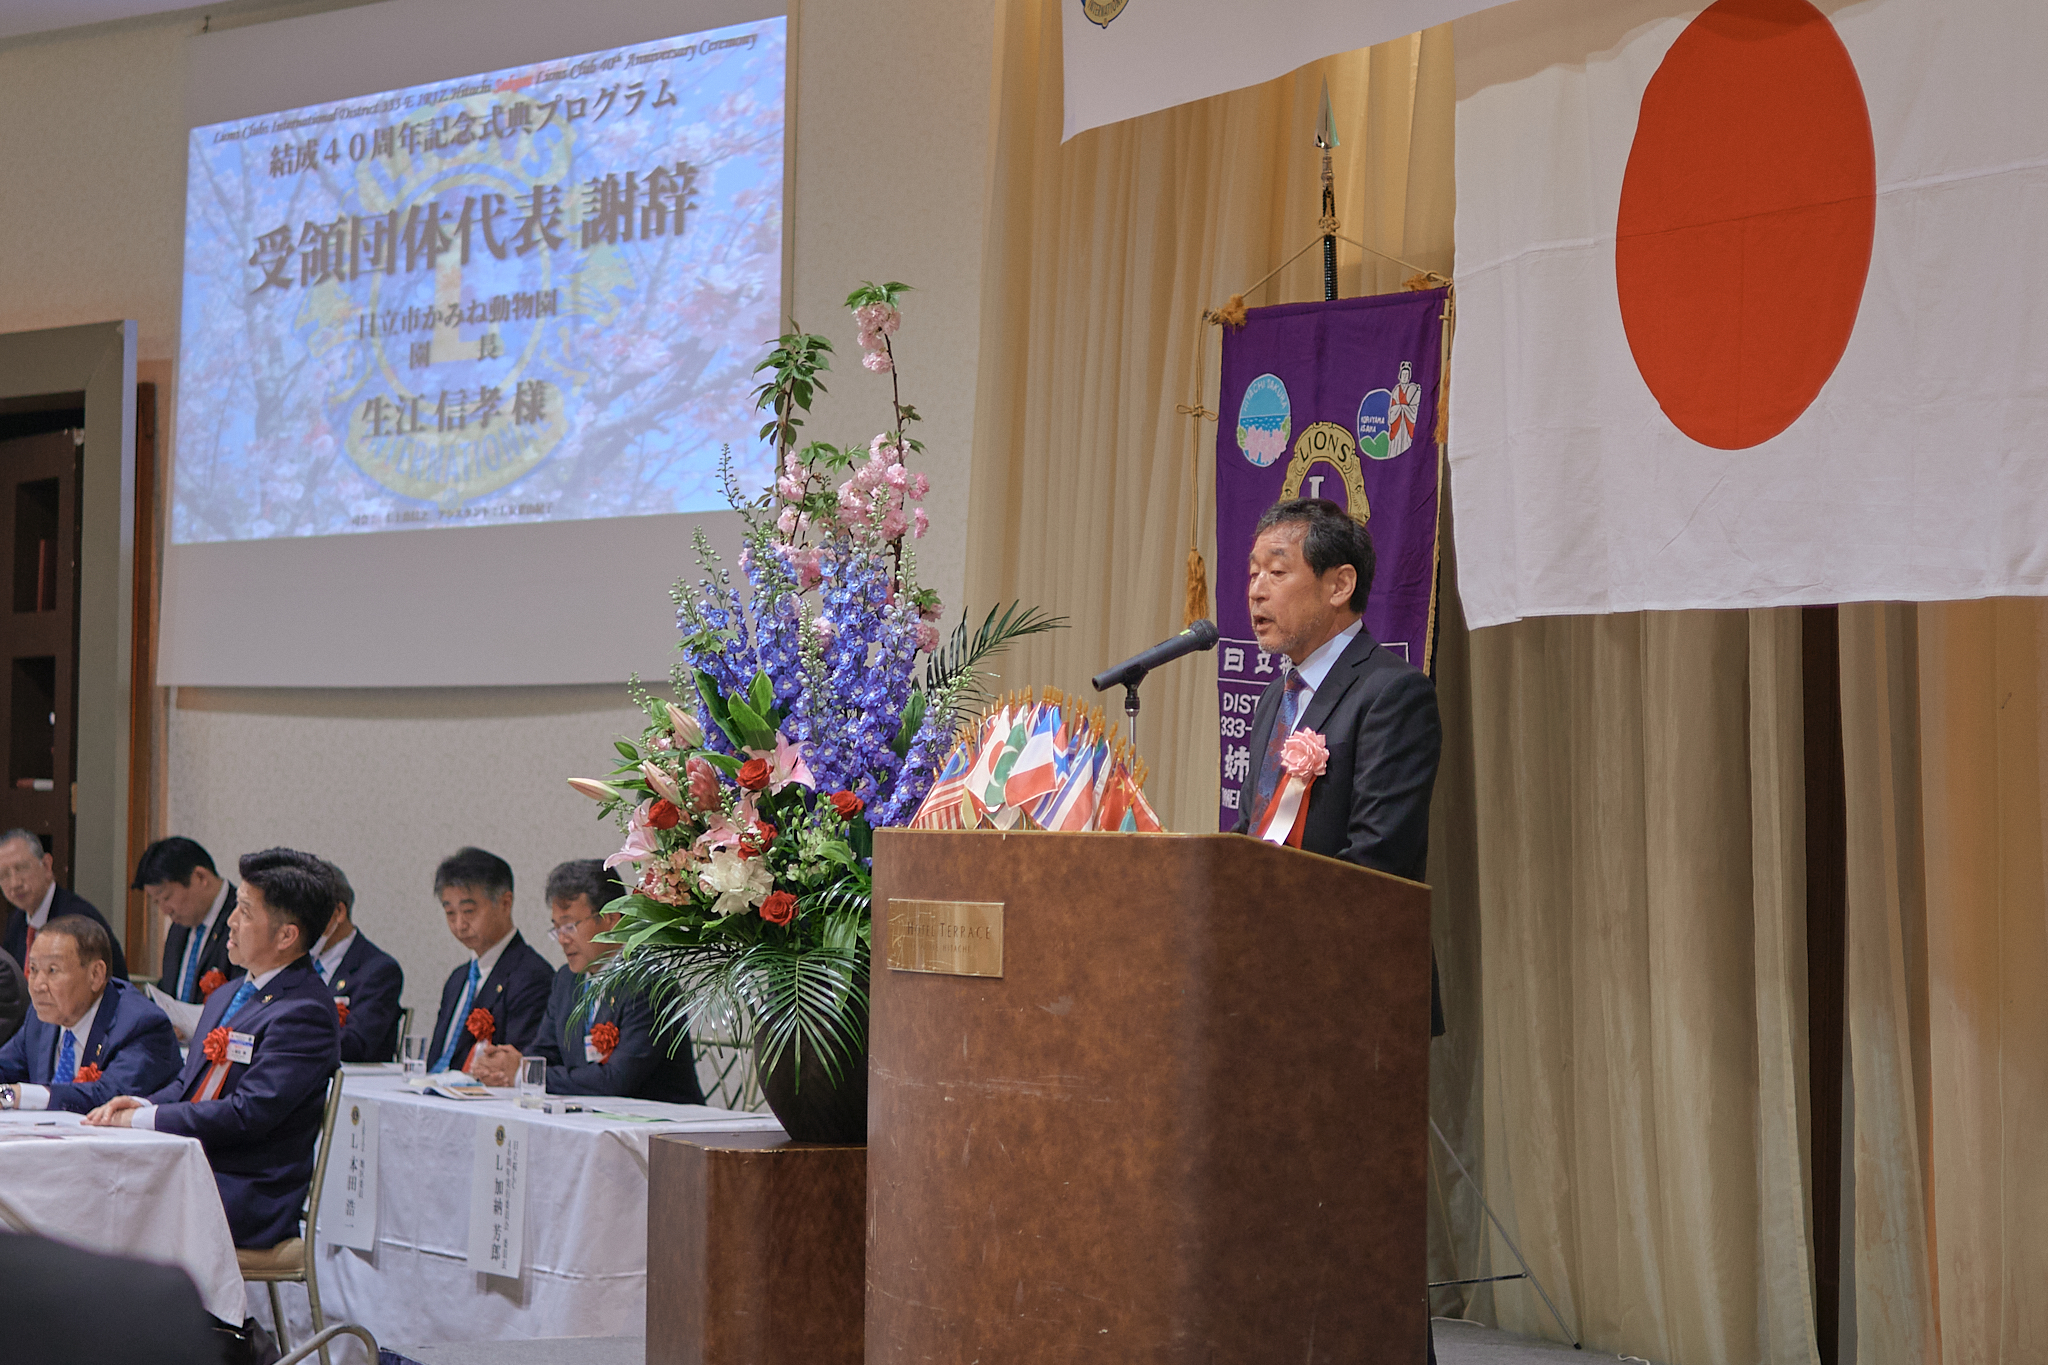 日立桜ライオンズクラブ結成40周年記念式典 ひたちなかベストライオンズクラブ